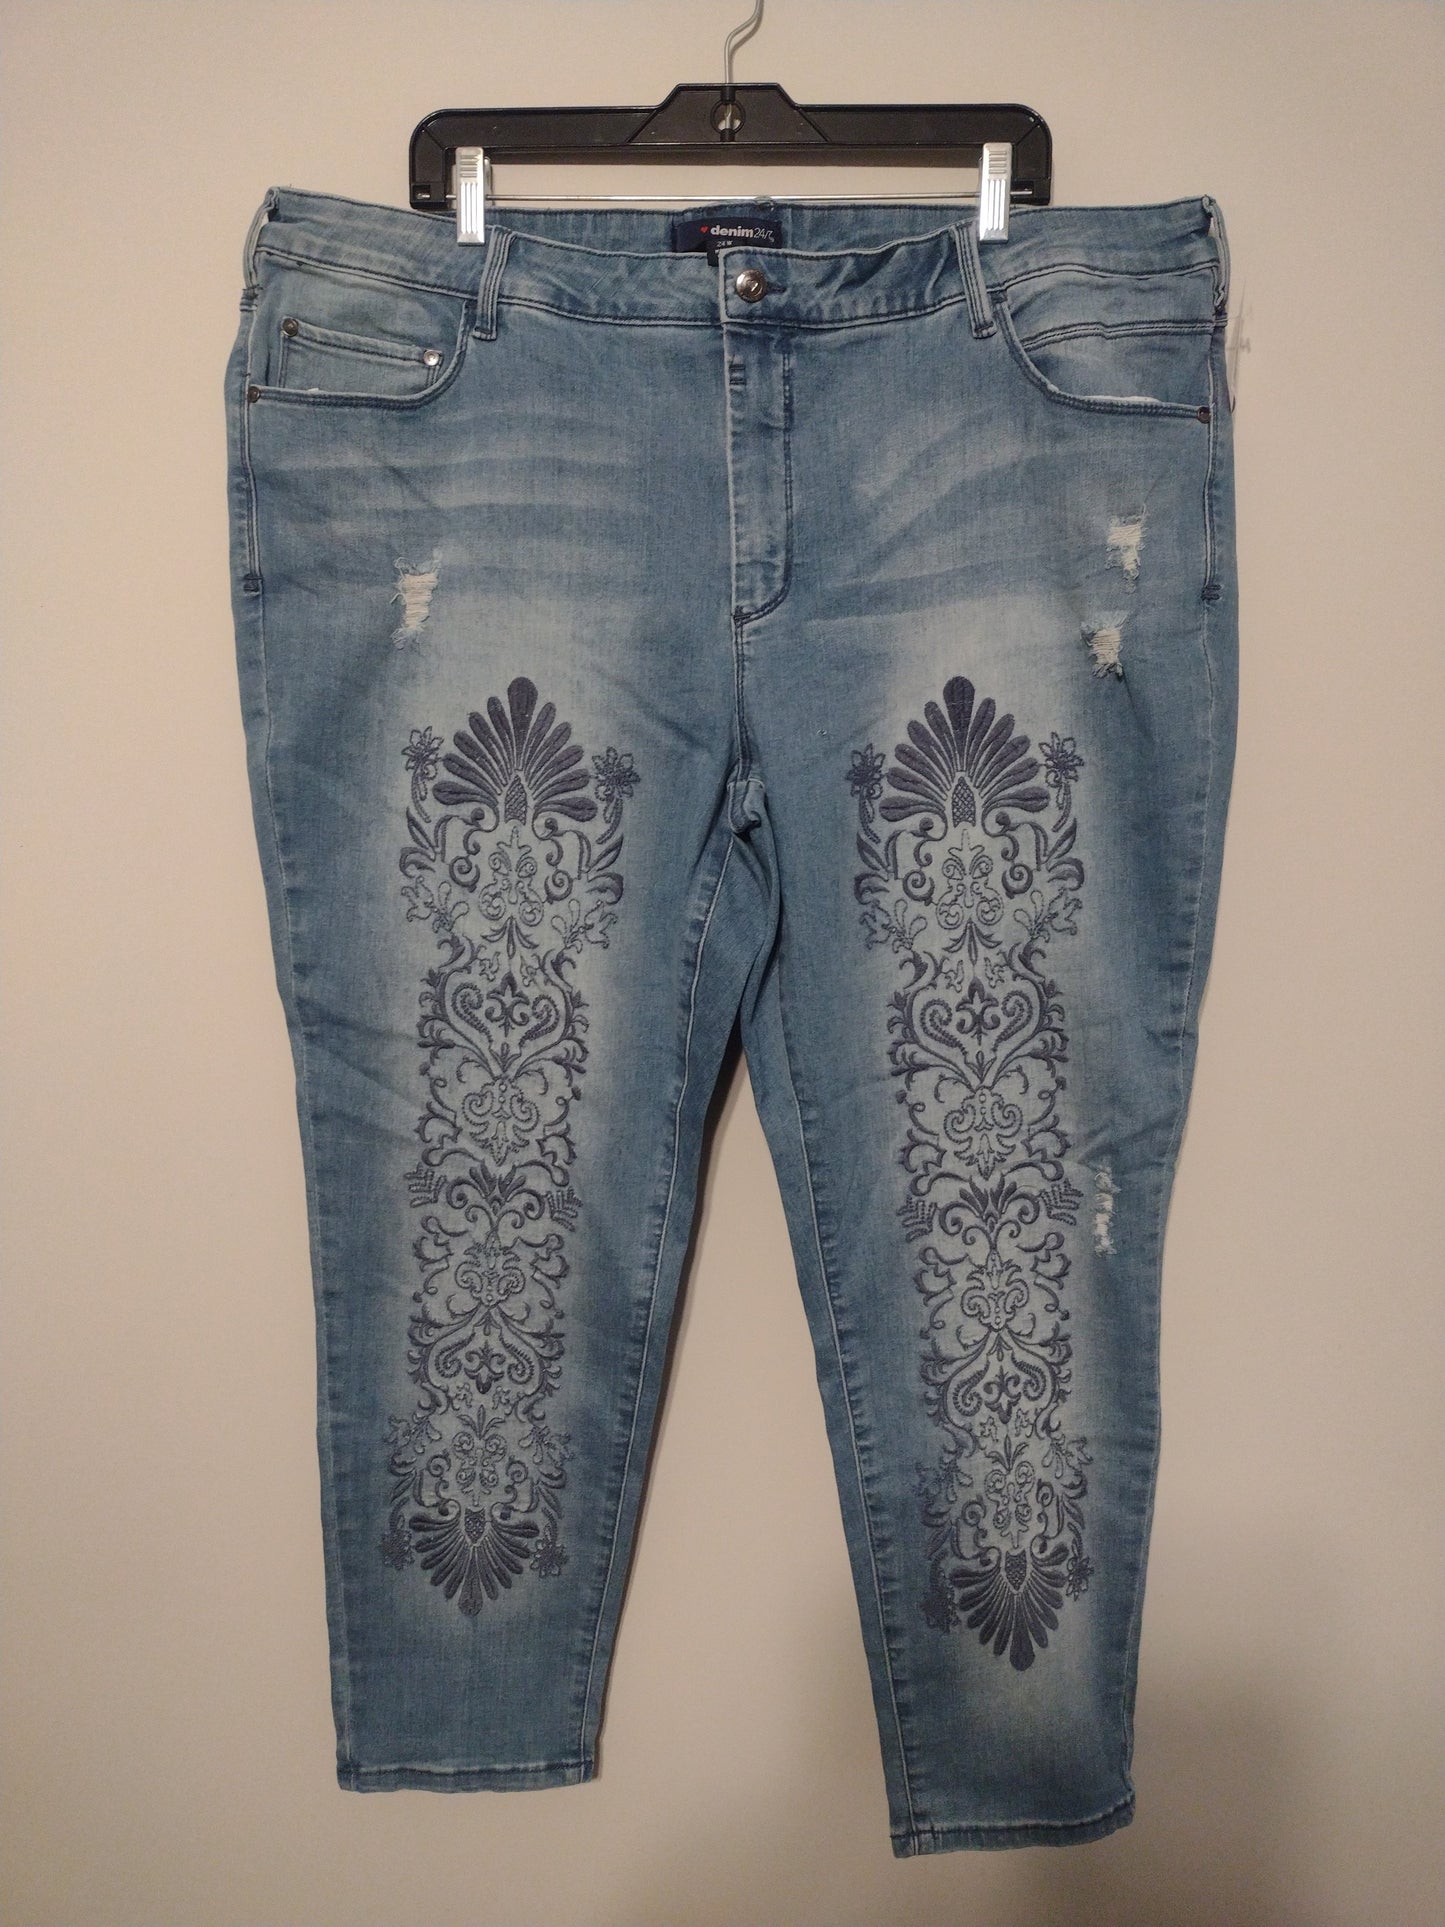 Jeans Skinny By Denim 24/7  Size: 24